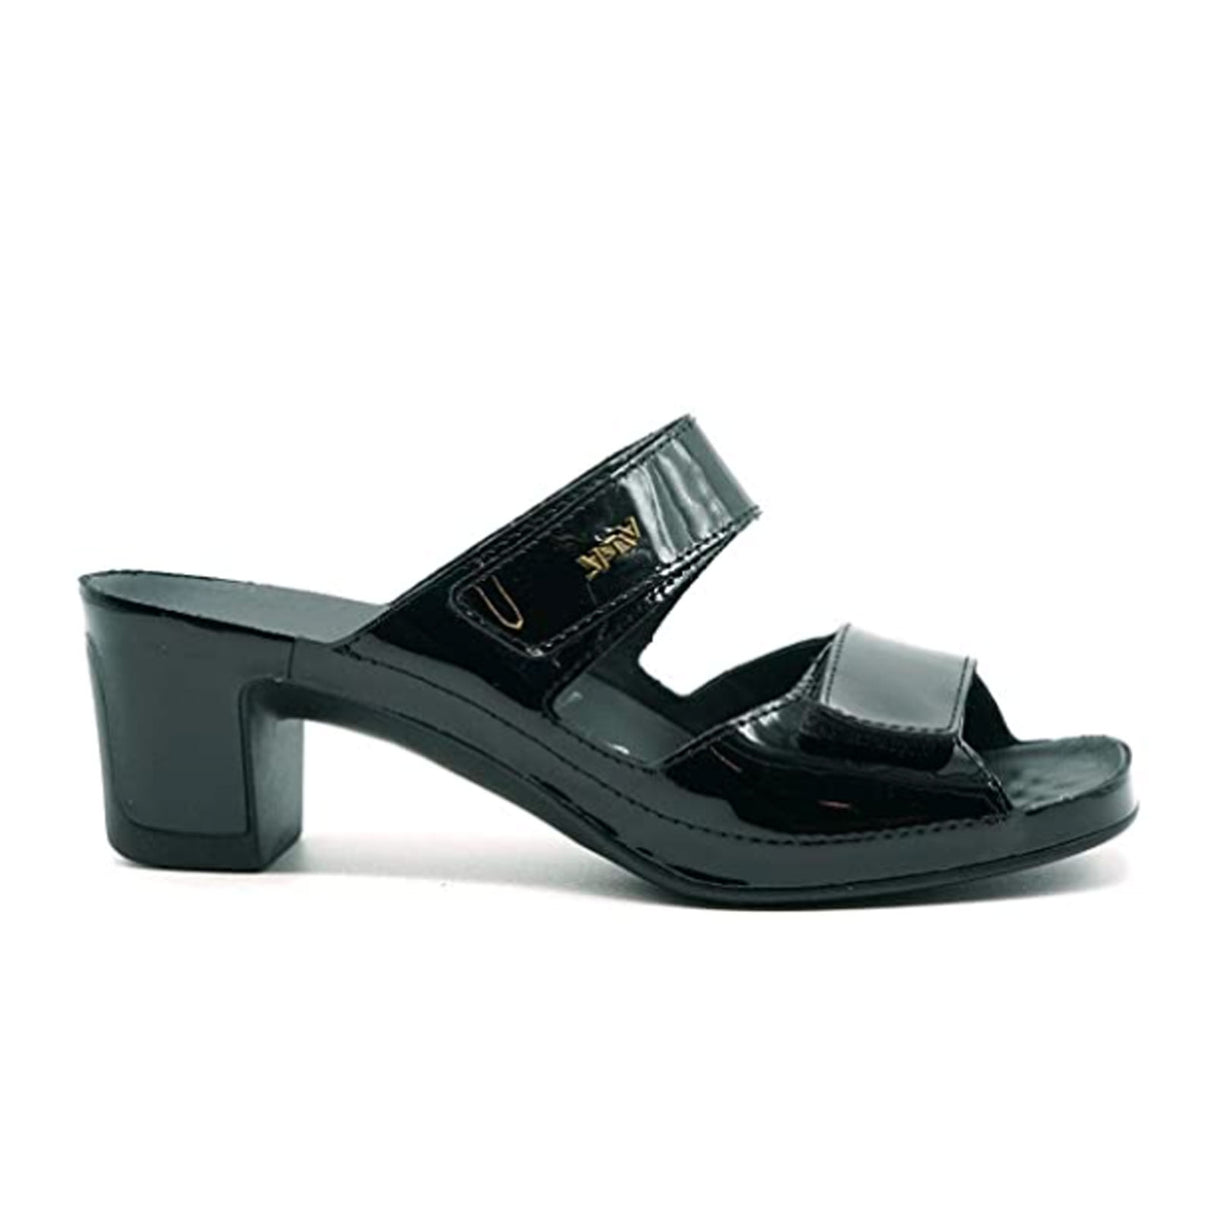 Vital Joy (Women) - Black Patent Sandals - Heel/Wedge - The Heel Shoe Fitters